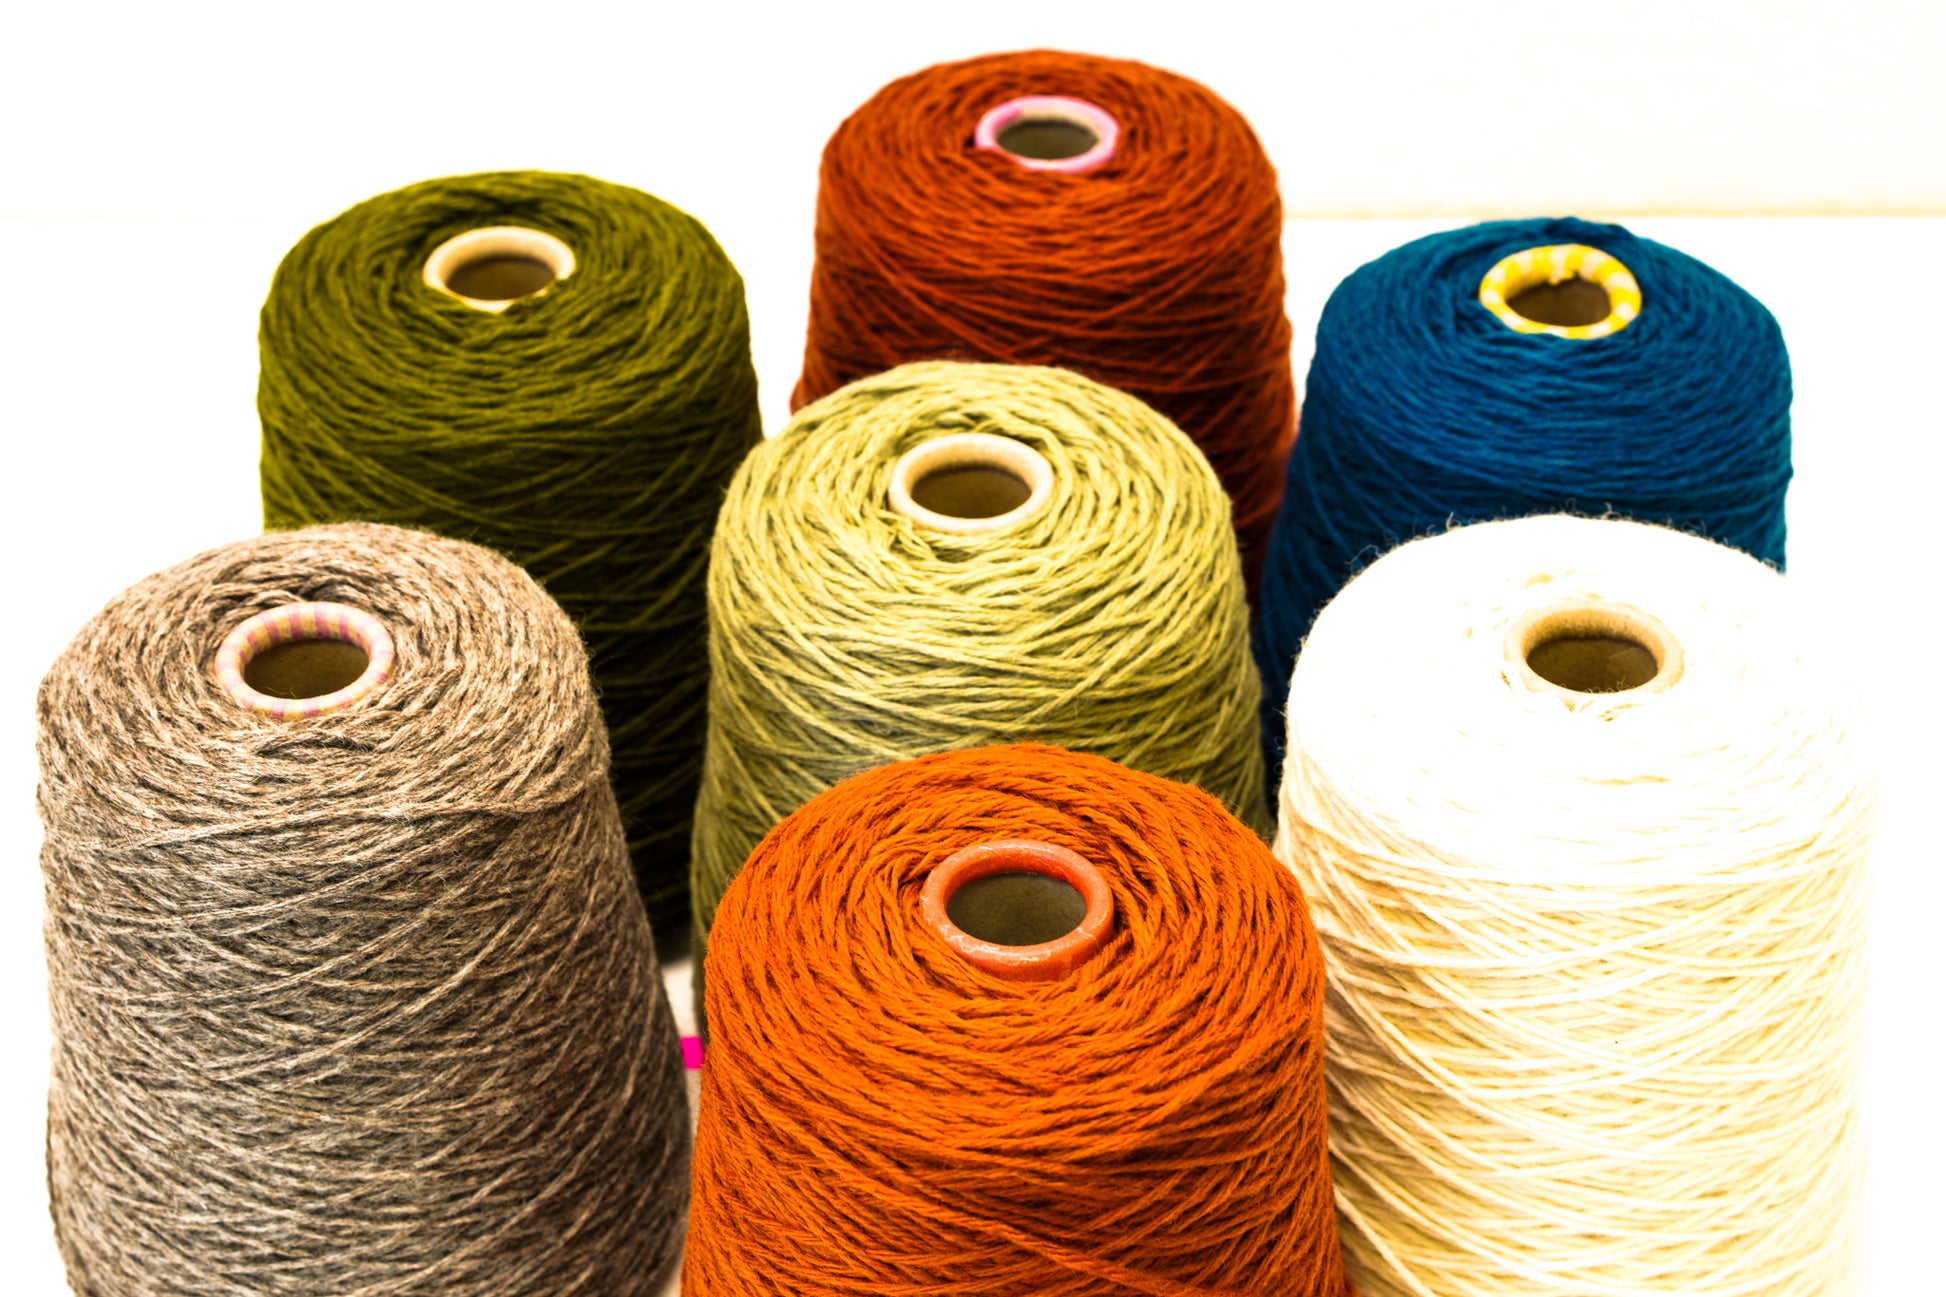 Grey-brown Undyed Wool Yarn in Cone - 500g/550m